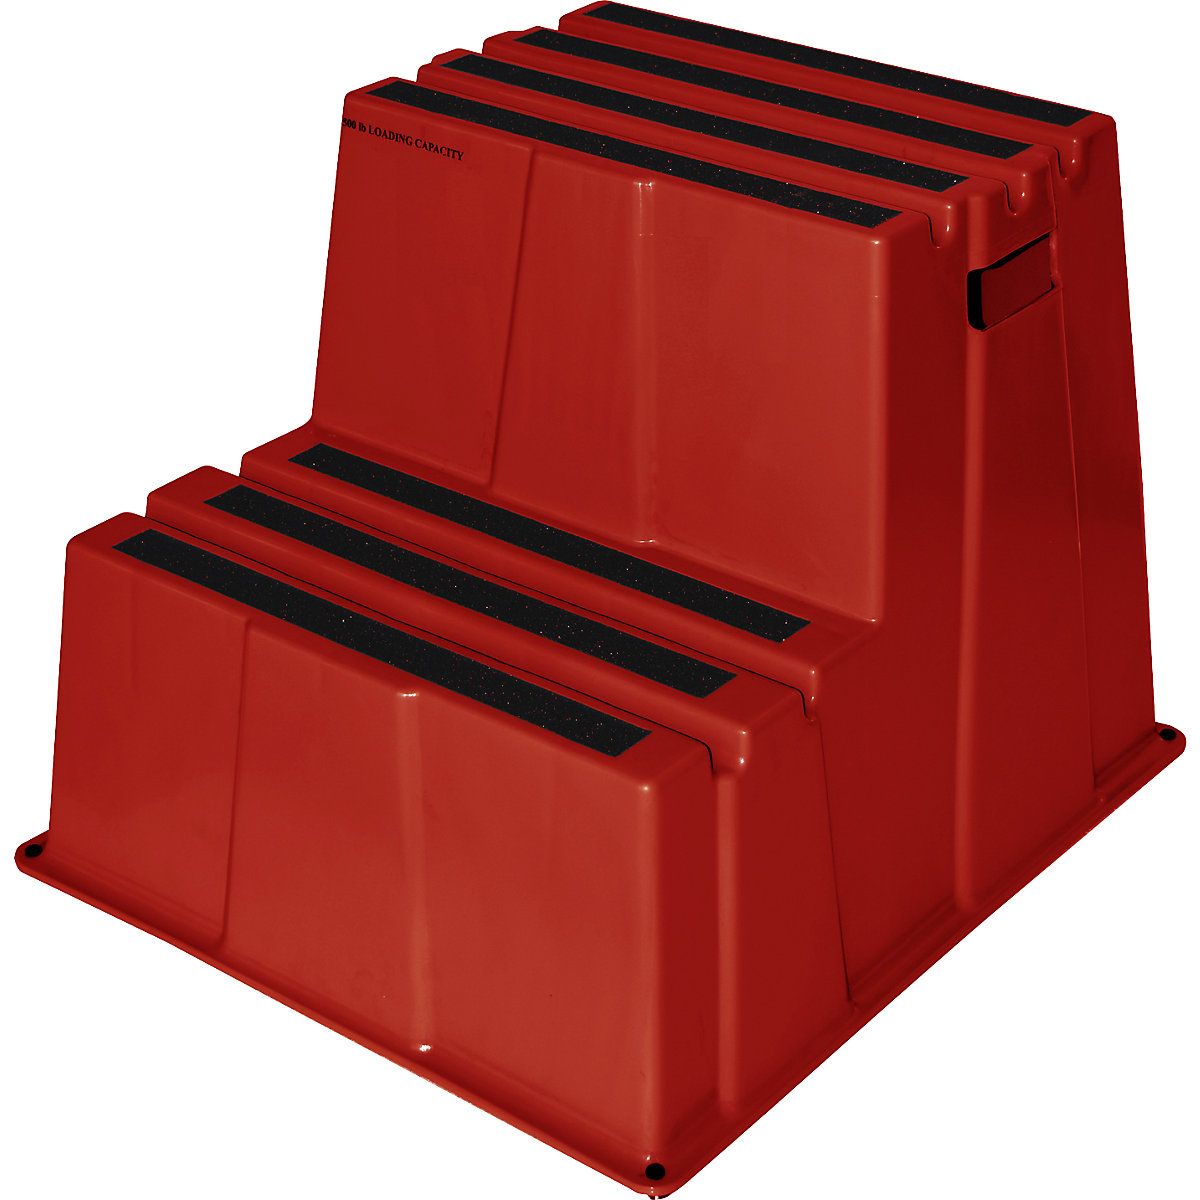 Scară din plastic cu trepte antiderapante – Twinco, capacitate portantă 150 kg, 2 trepte, roșu-6